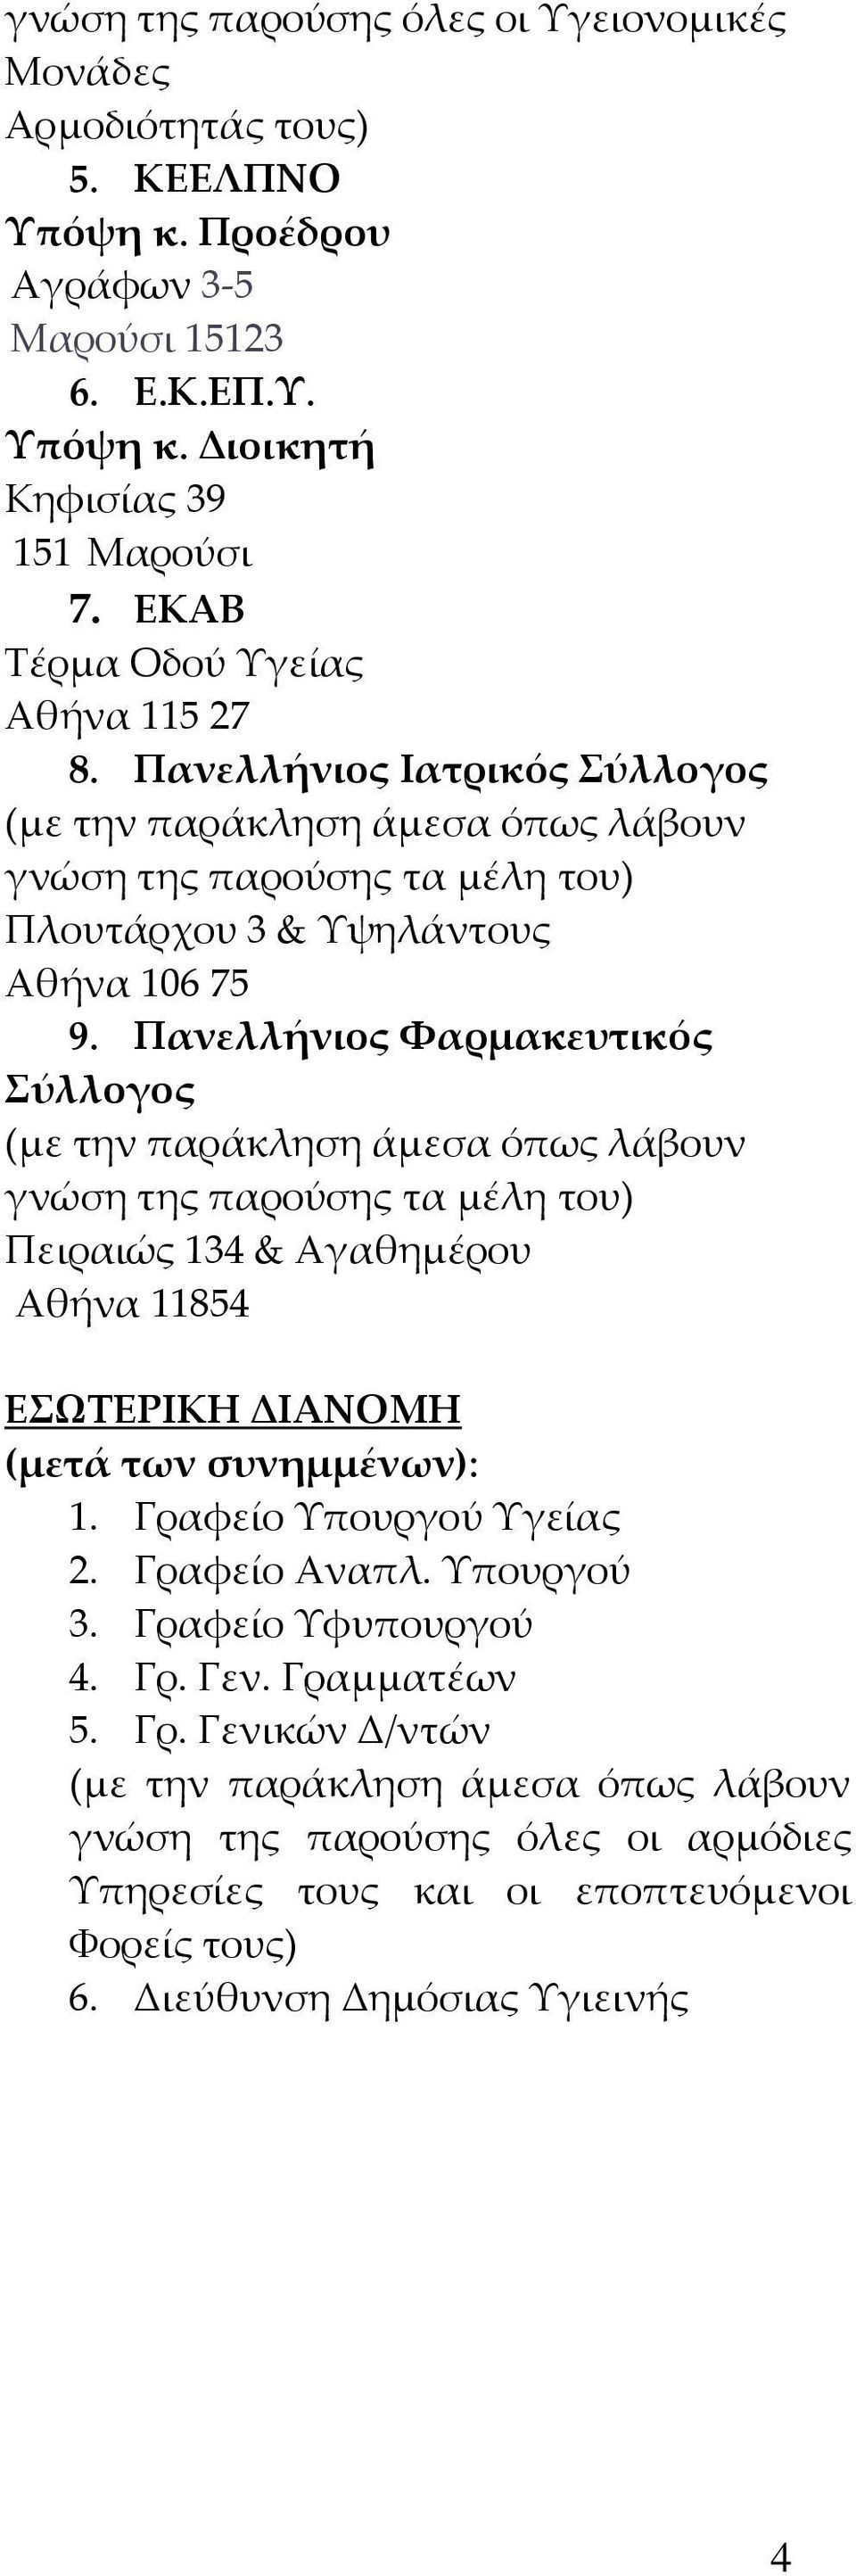 Πανελλήνιος Φαρμακευτικός Σύλλογος γνώση της παρούσης τα μέλη του) Πειραιώς 134 & Αγαθημέρου Αθήνα 11854 ΕΣΩΤΕΡΙΚΗ ΔΙΑΝΟΜΗ (μετά των συνημμένων): 1.